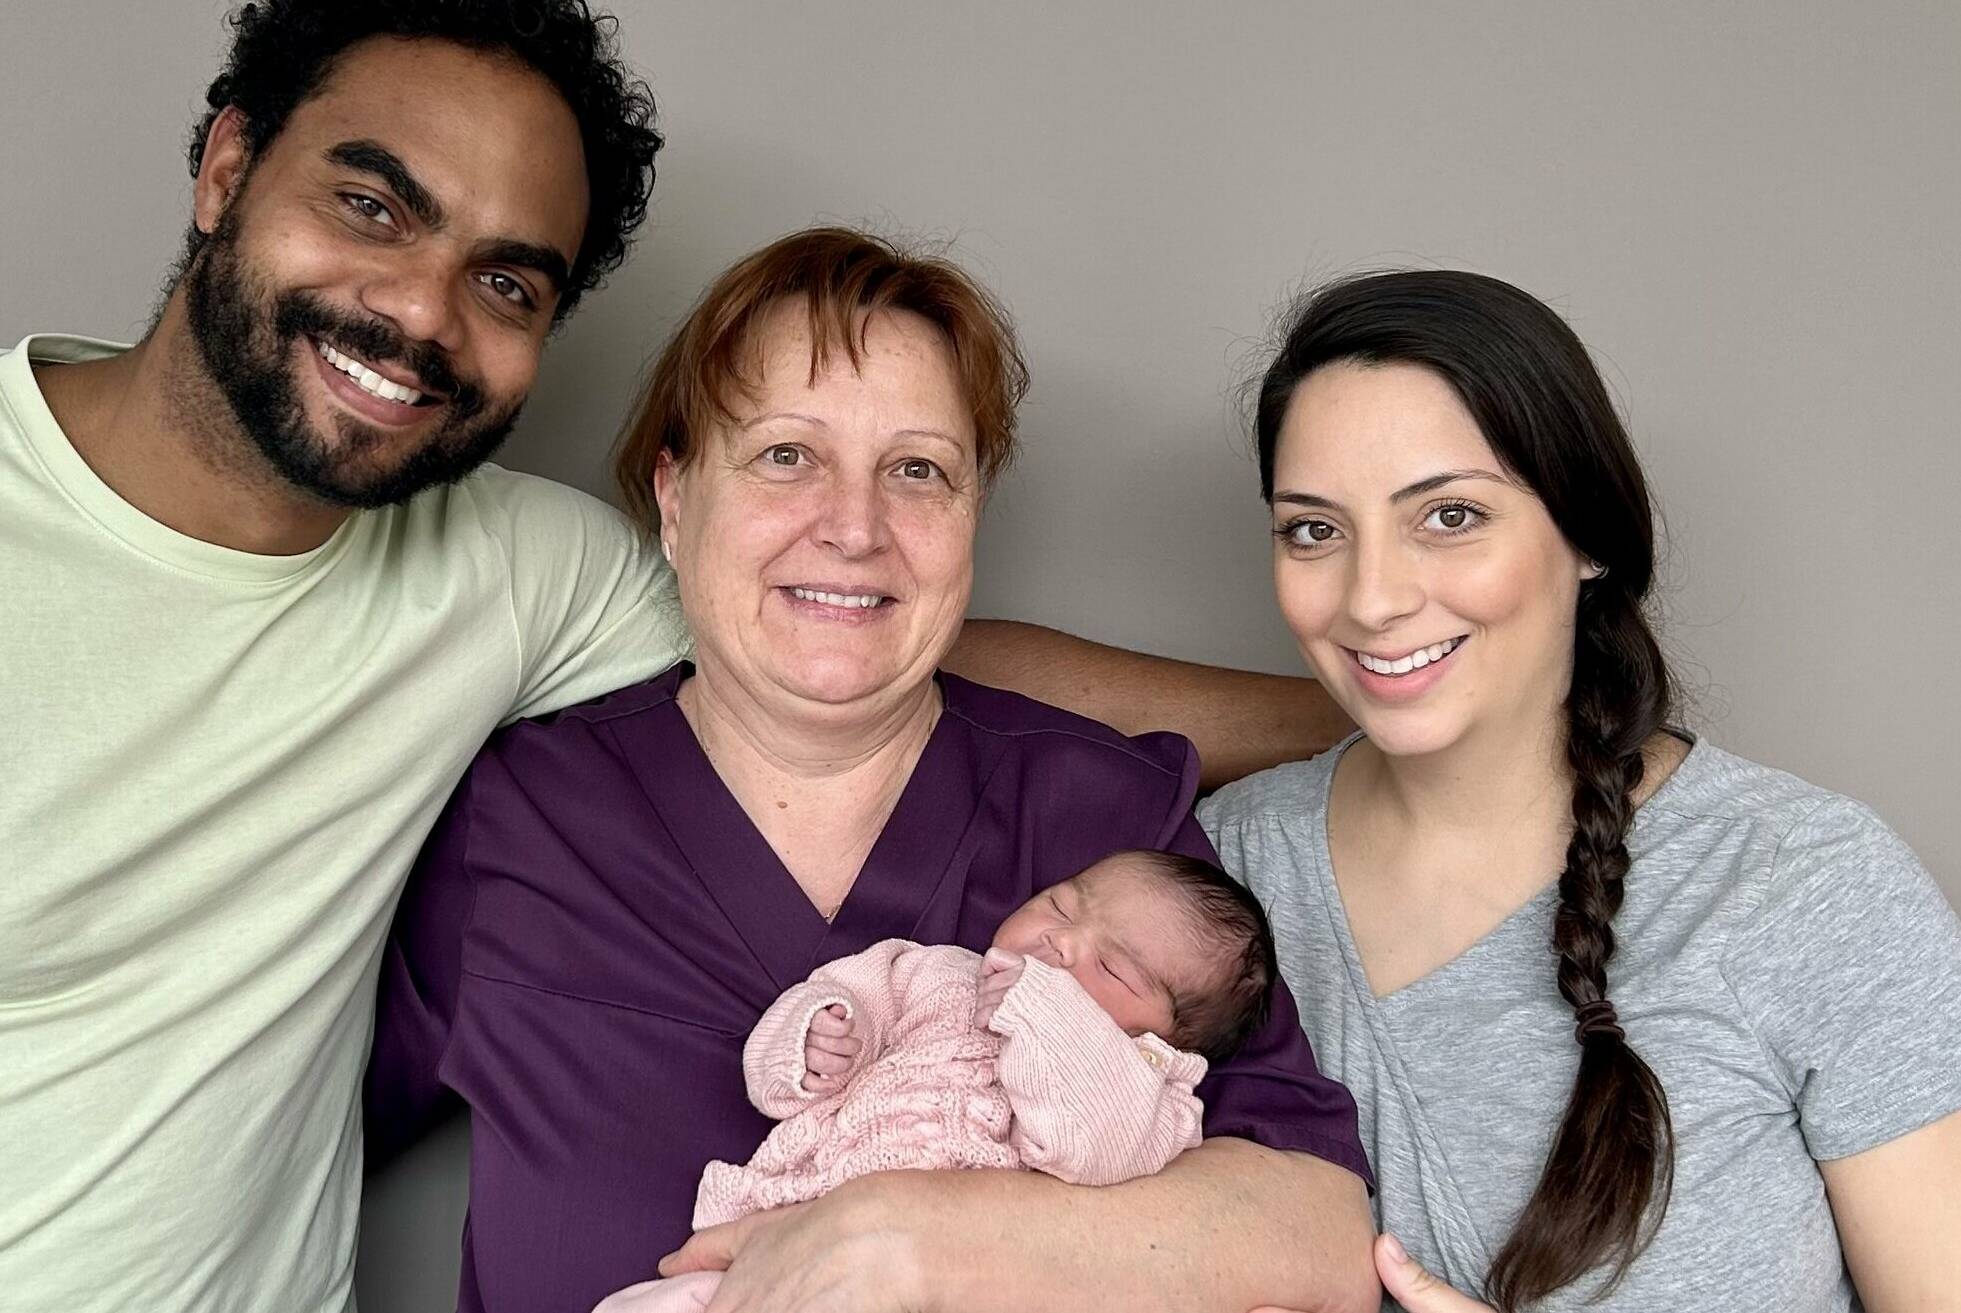   Cathalina und Andreas Stock mit Kinderkrankenschwester Anita Dost, die Baby Pia Camila hält.  